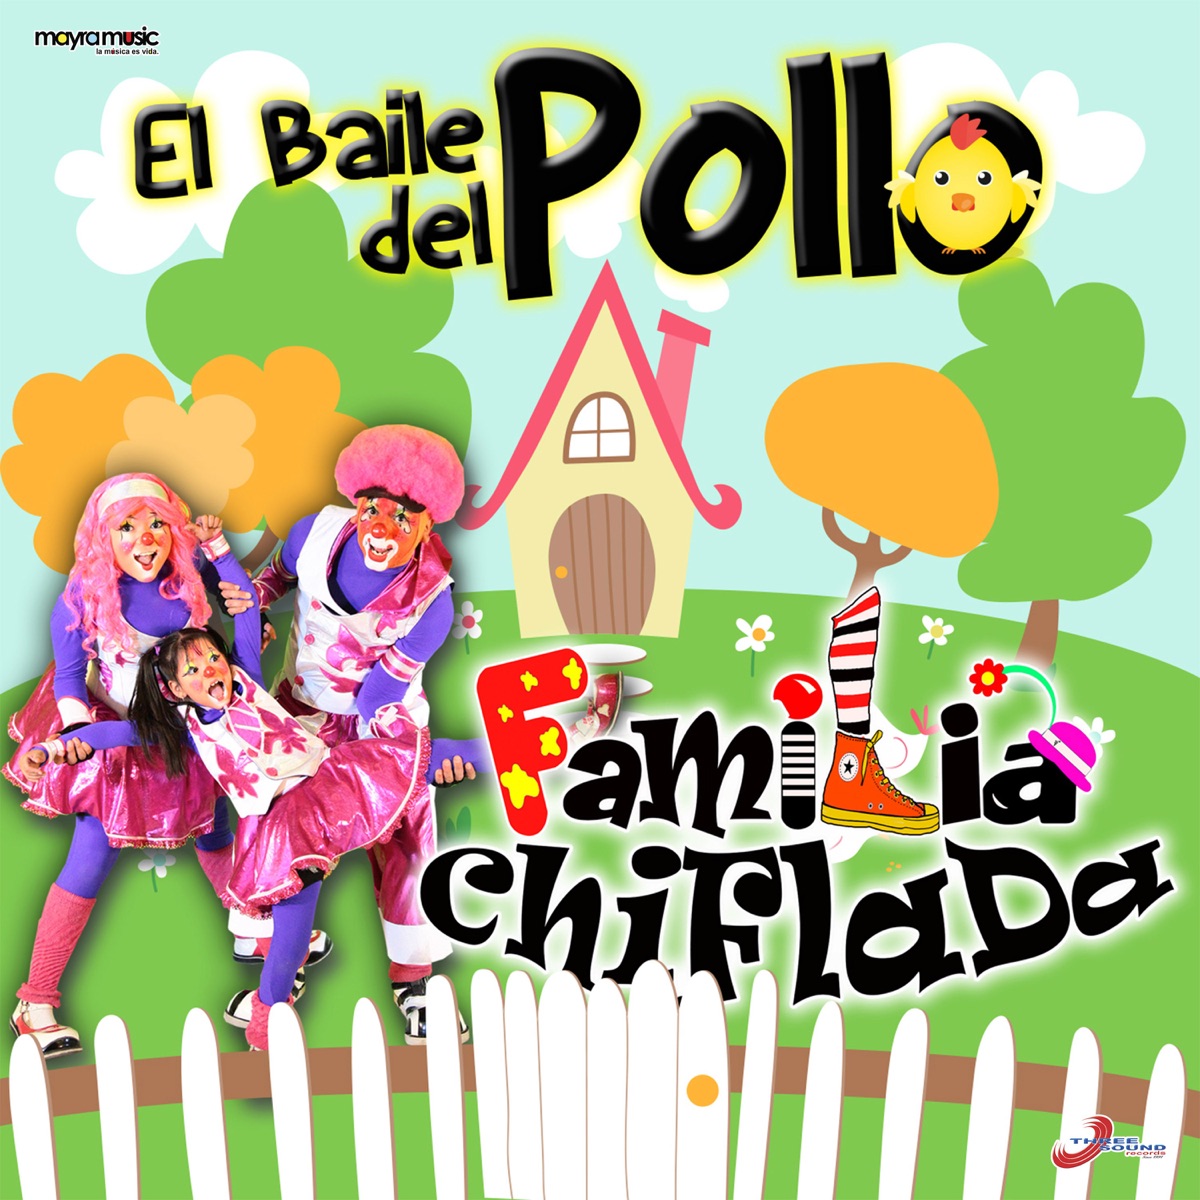 El Baile Del Pollo - Single de La Familia Chiflada en Apple Music